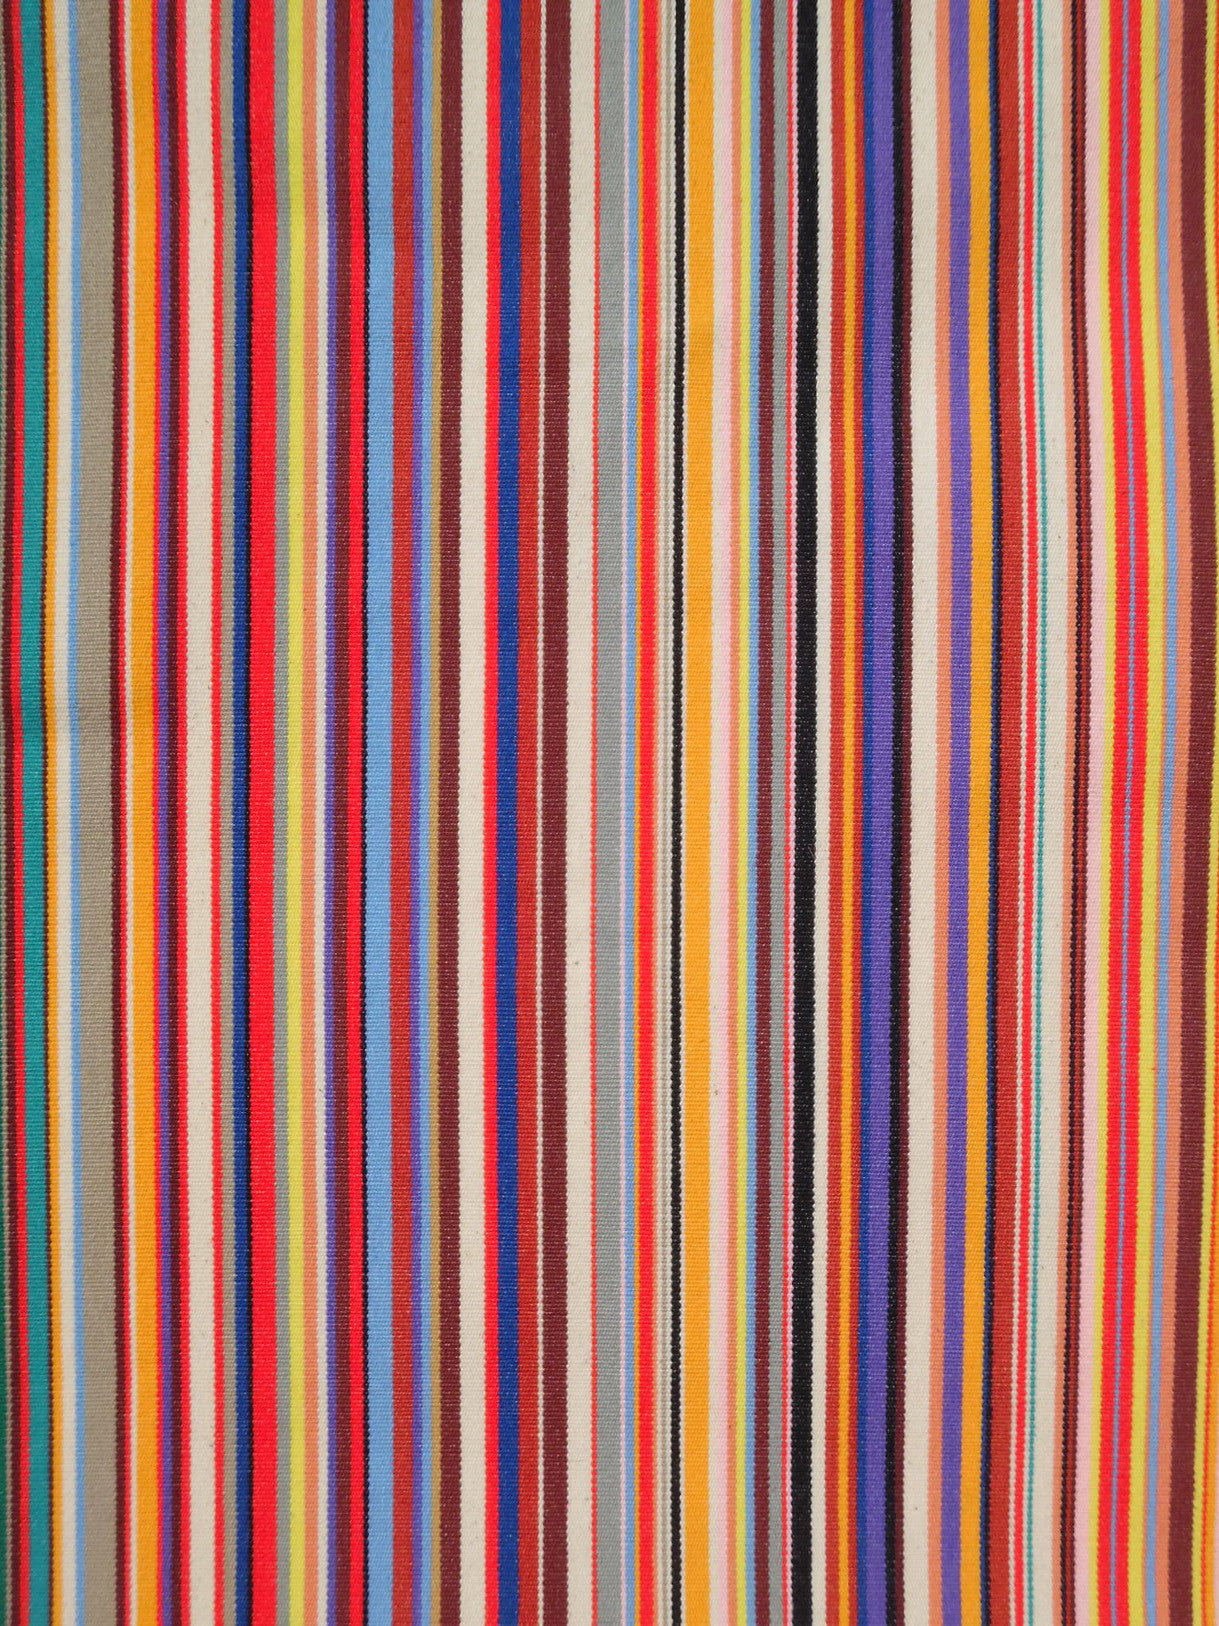 French Cotton Canvas Striped Textile Multi